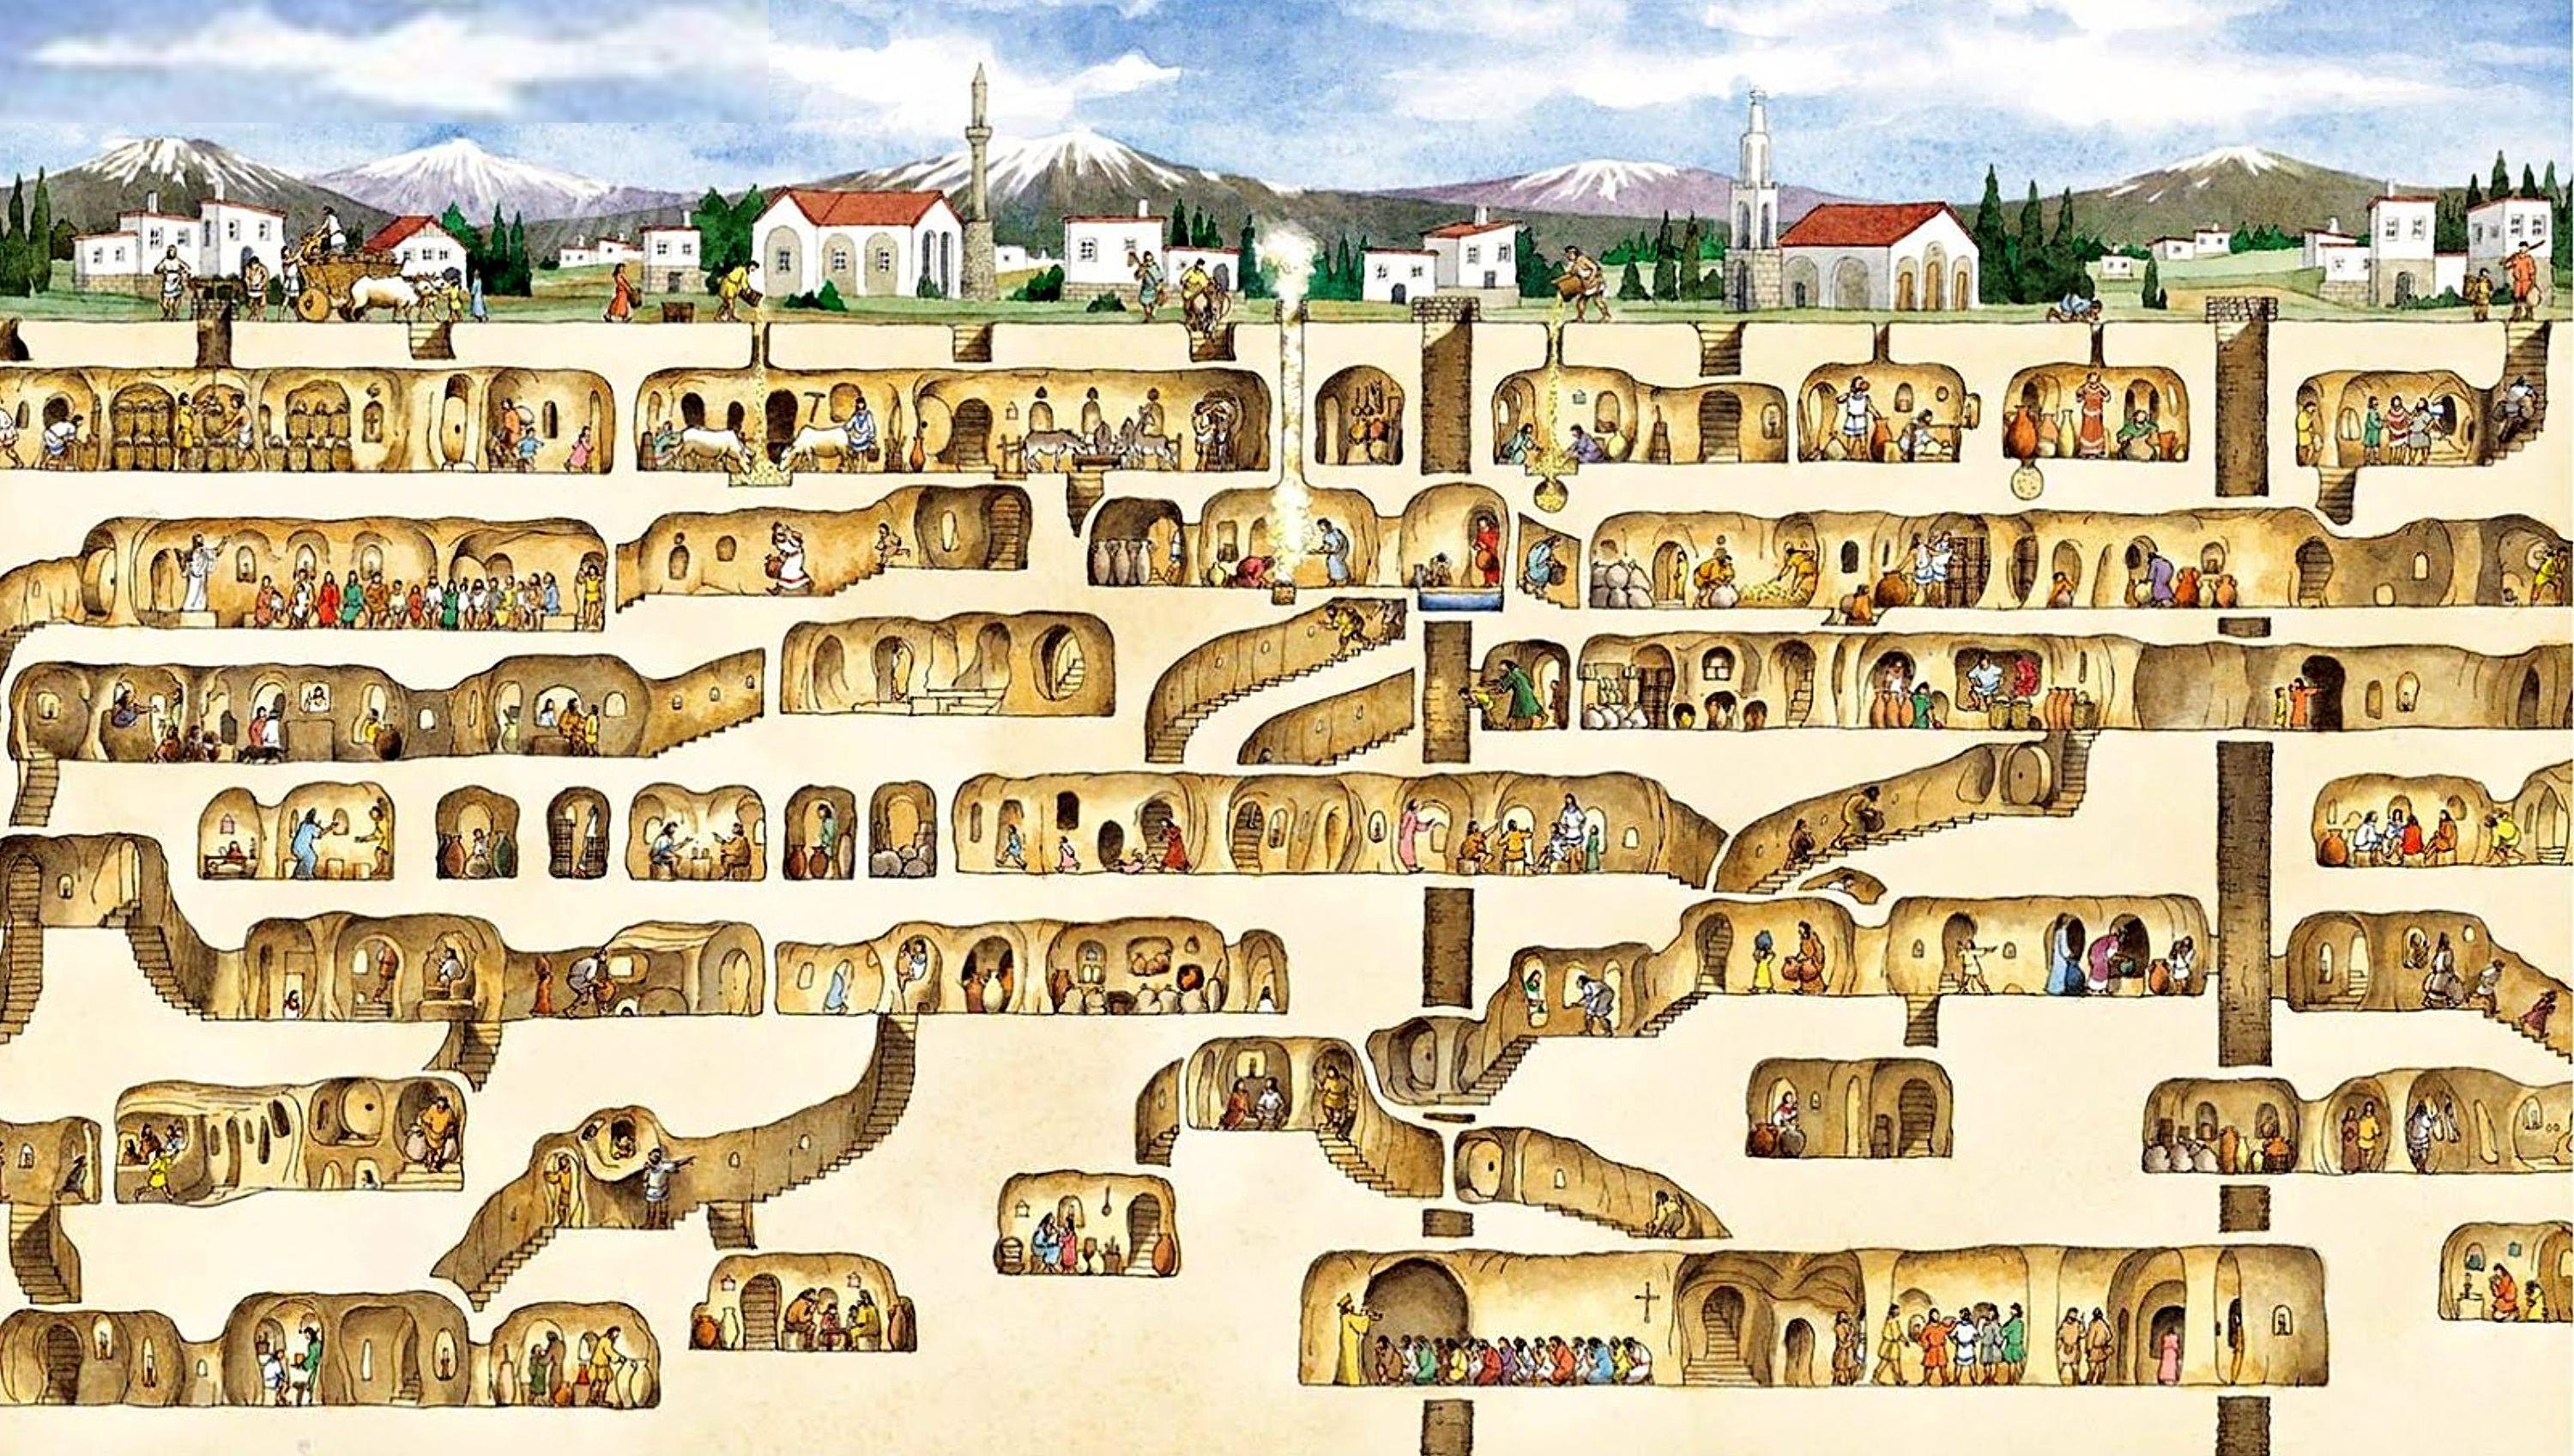 Derinkuyu: Mysterious underground city in Turkey found in man's basement